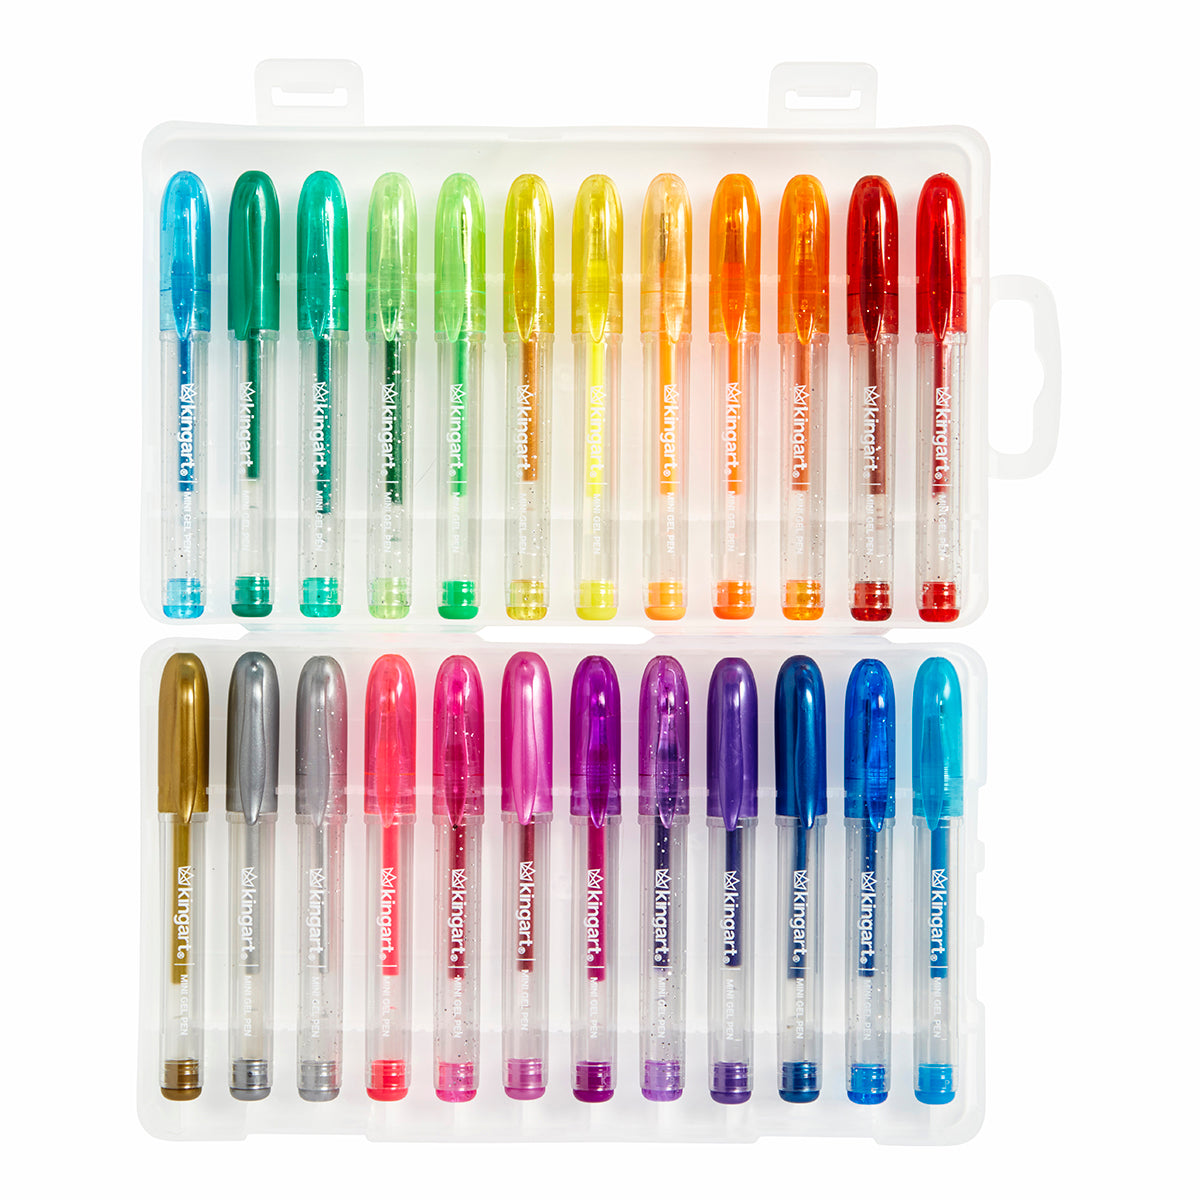 2 counts Jot Mini Gel Pens Assorted Colors for sale online